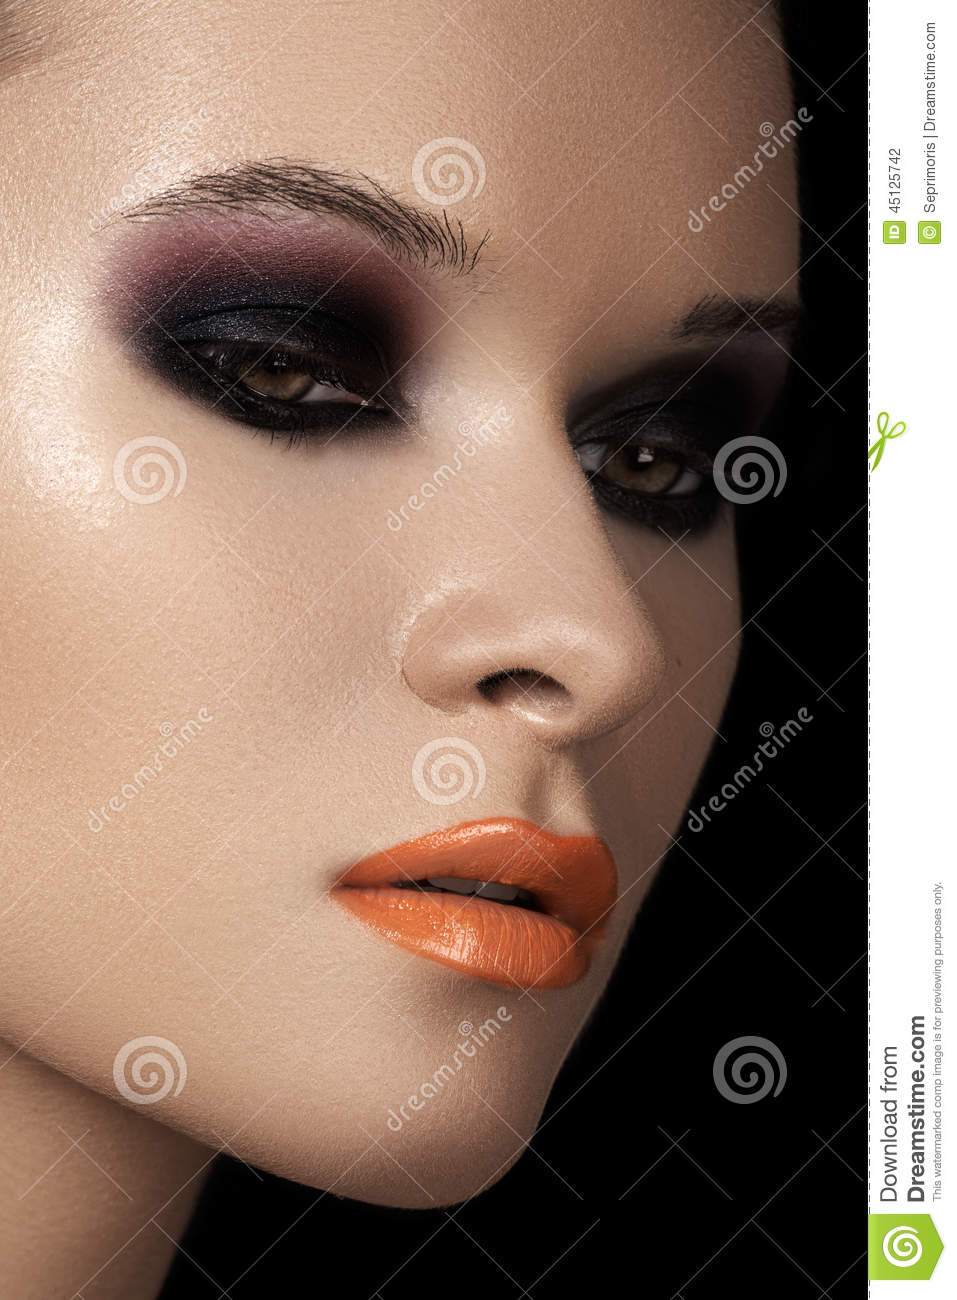 Eye Makeup For Orange Lips Fashion Dark Smoky Eyes Makeup Black Eyeshadows Orange Lips Stock